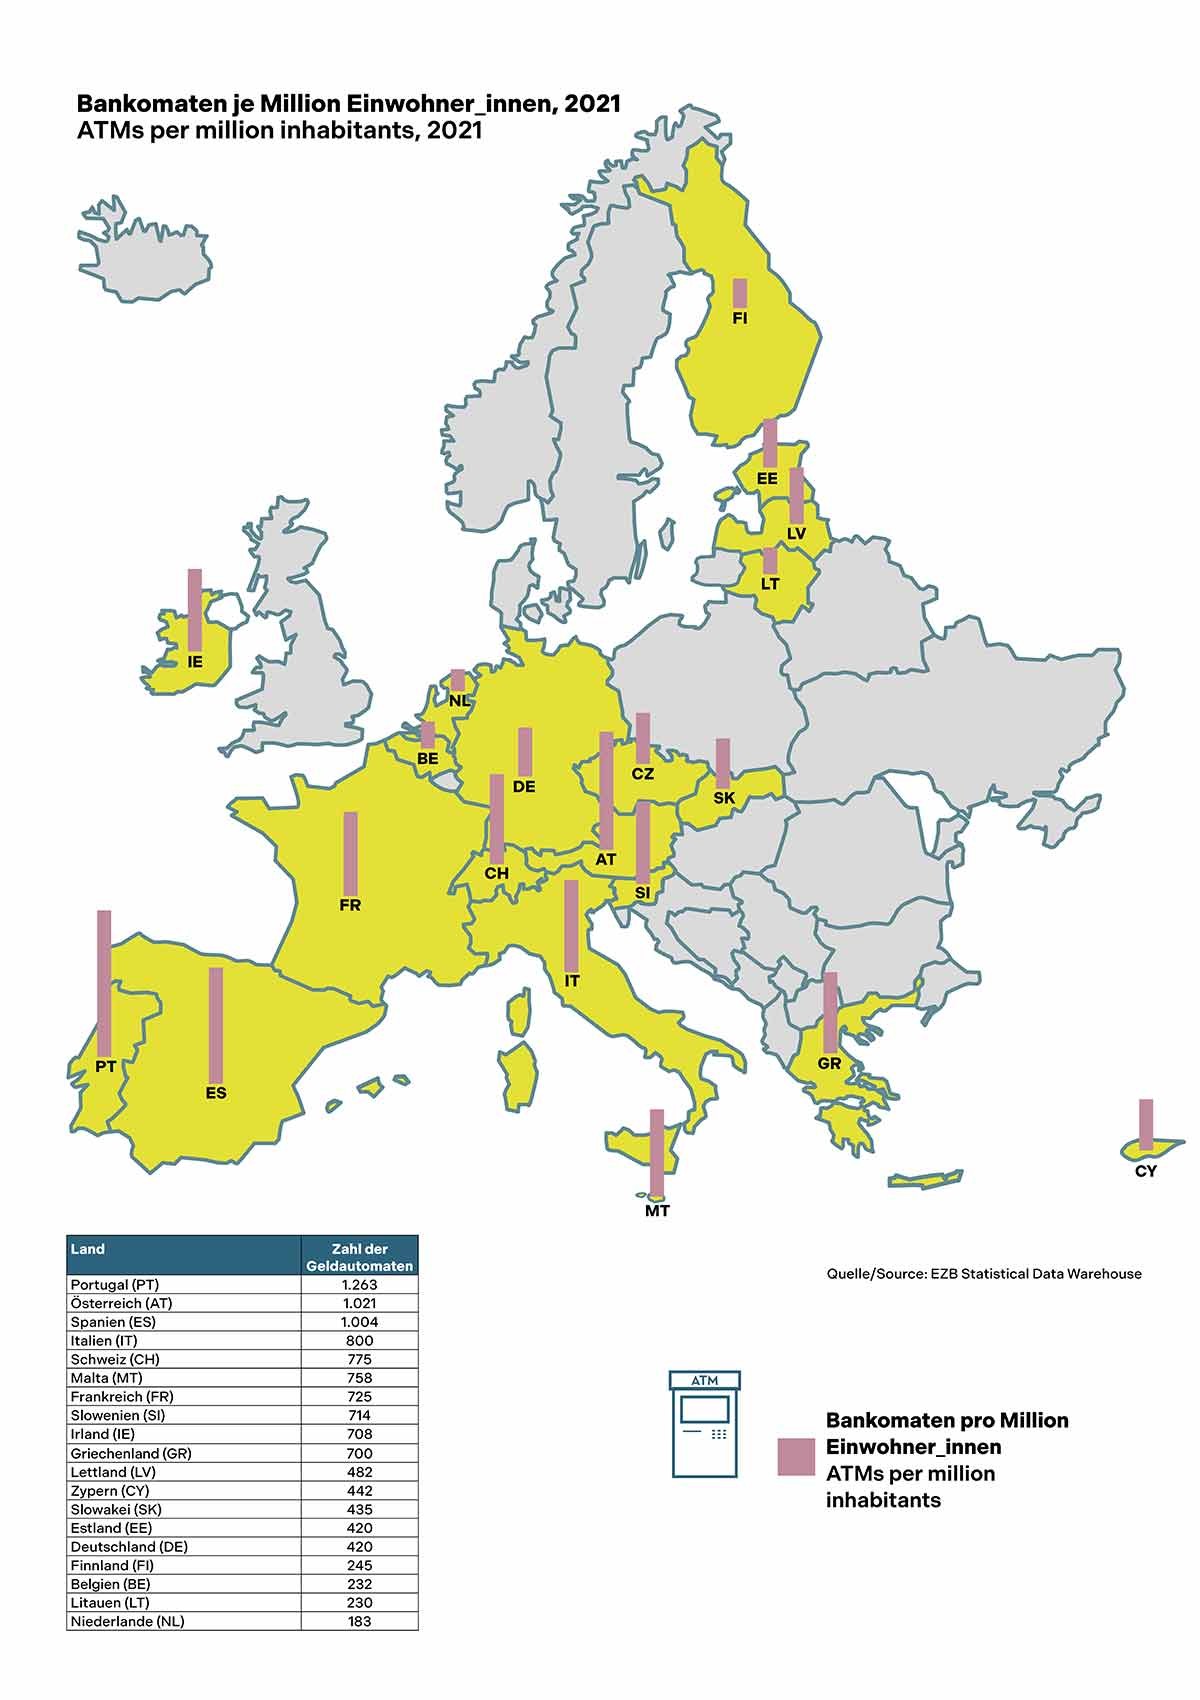 Anzahl der Geldautomaten in der EU, 2021: Anzahl der Geldautomaten in der EU, 2021